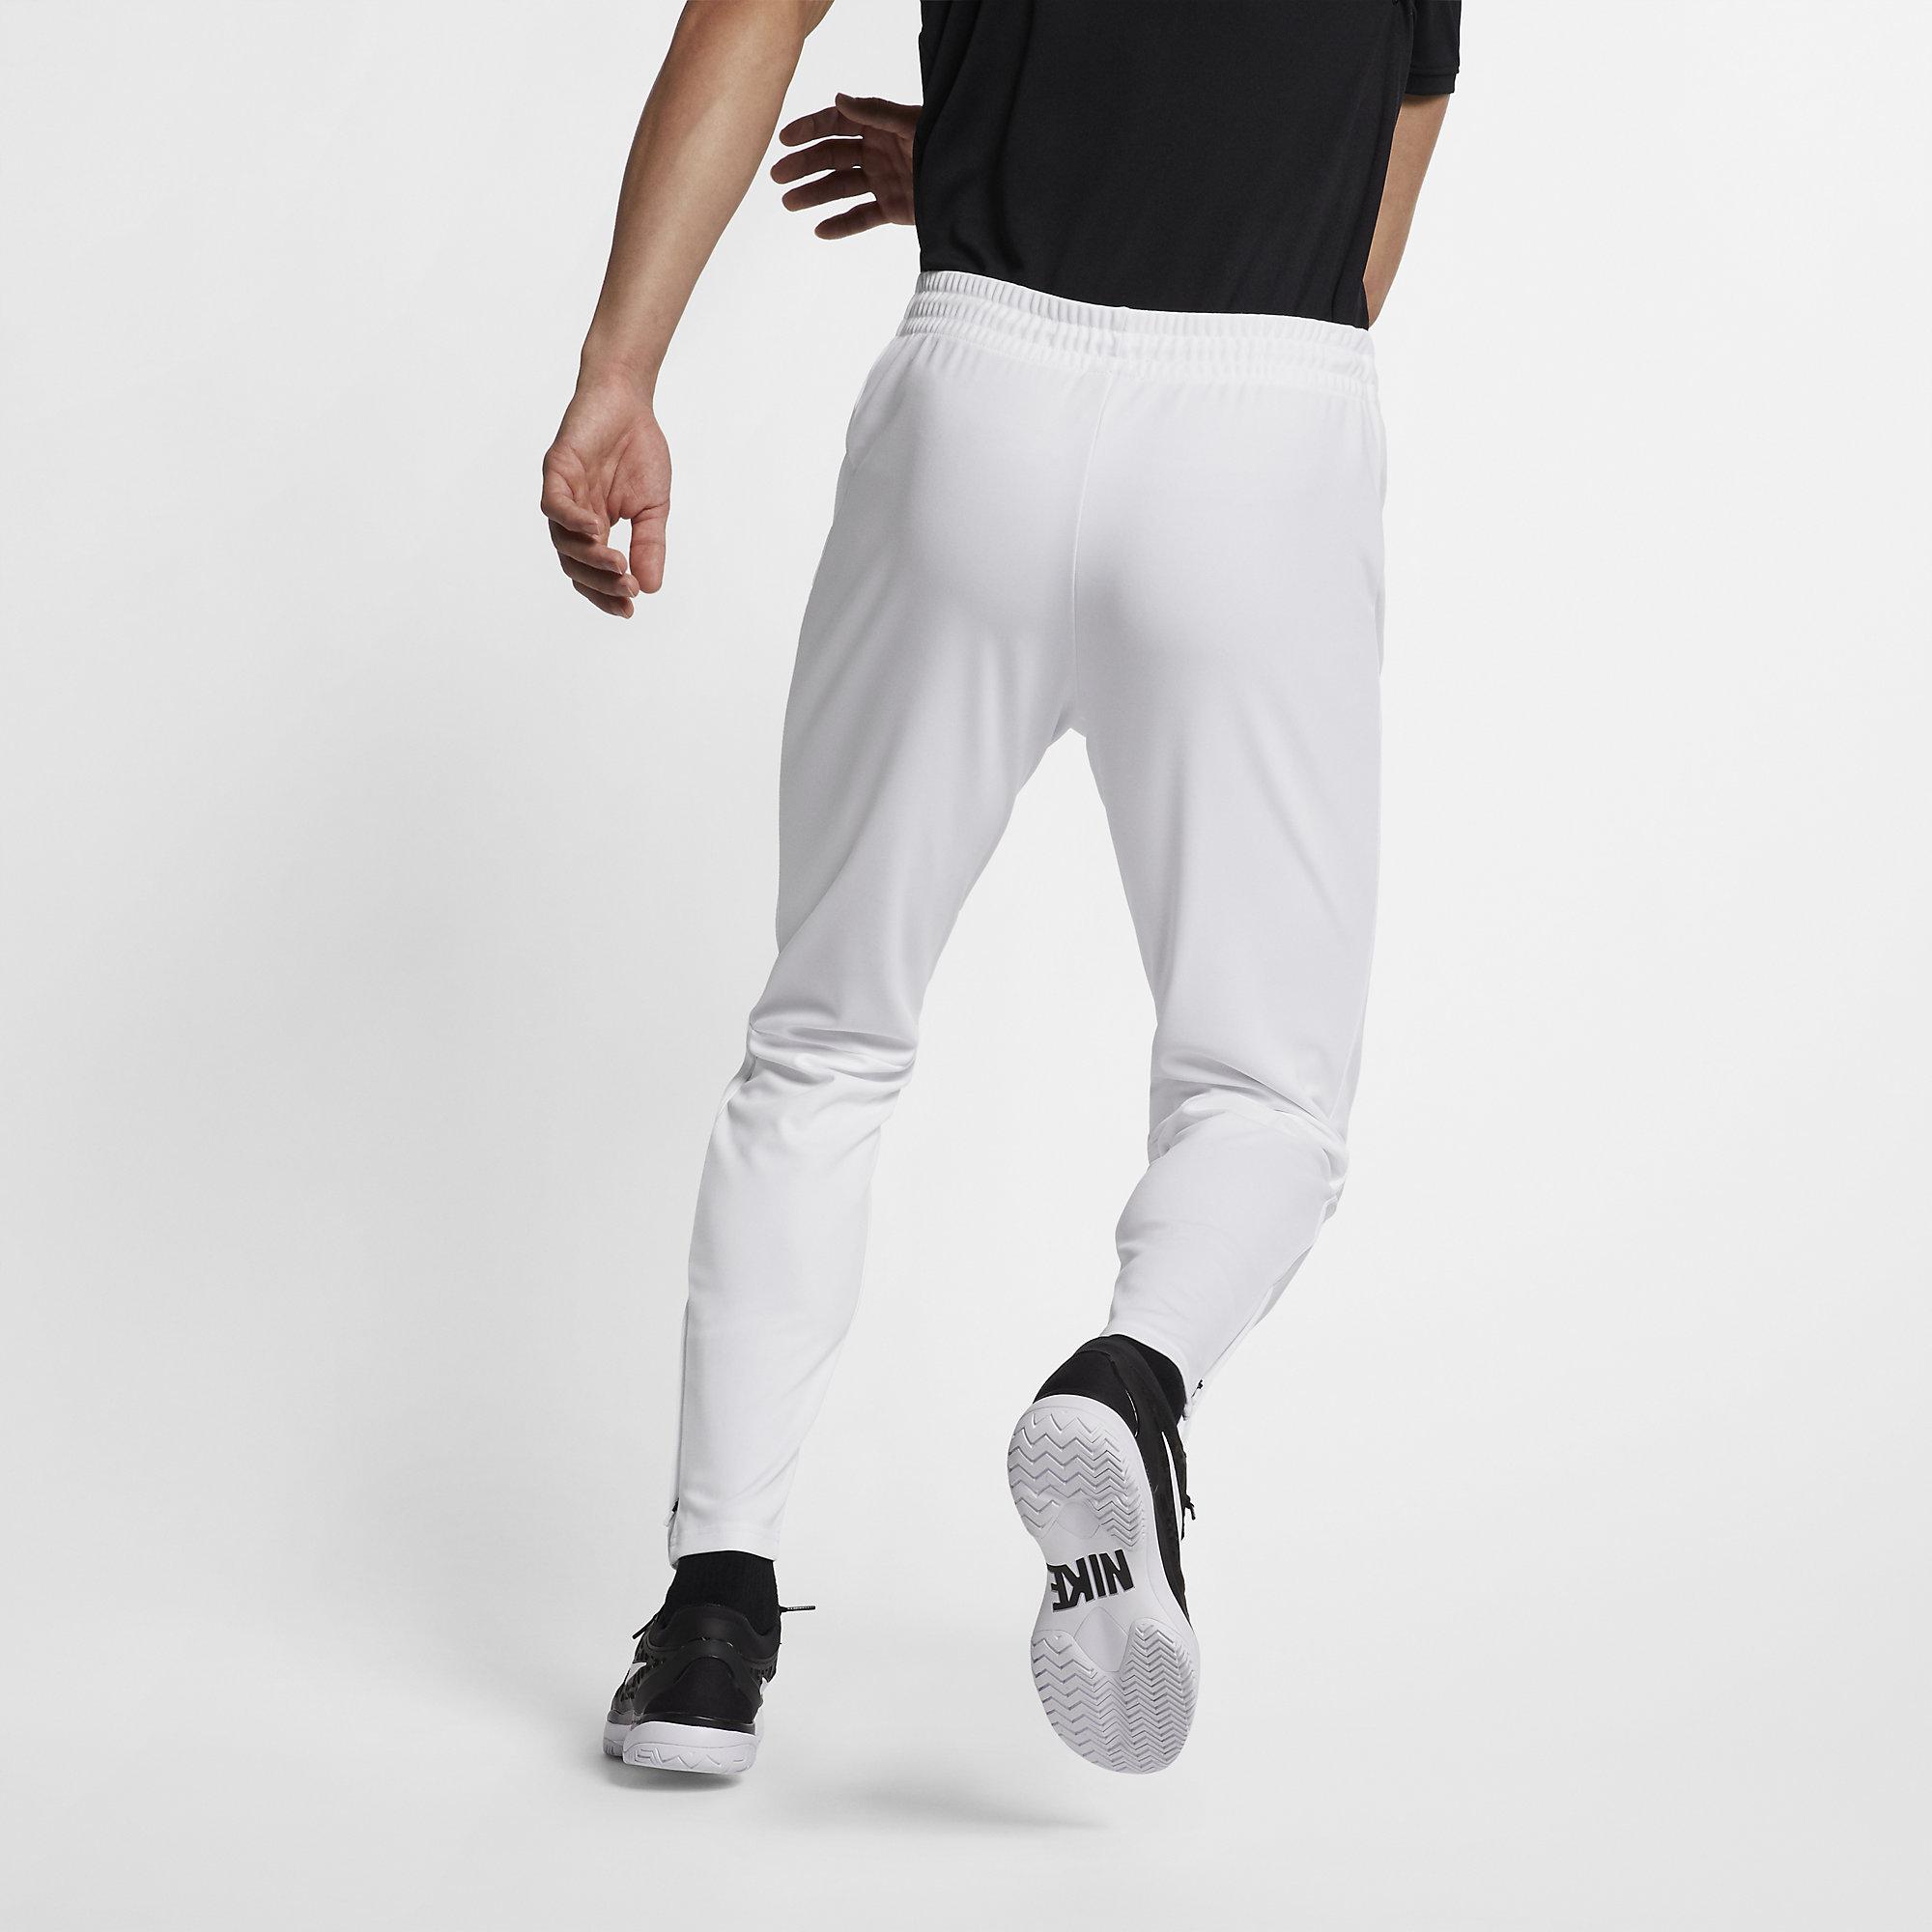 Nike Mens Tennis Pants - White - Tennisnuts.com